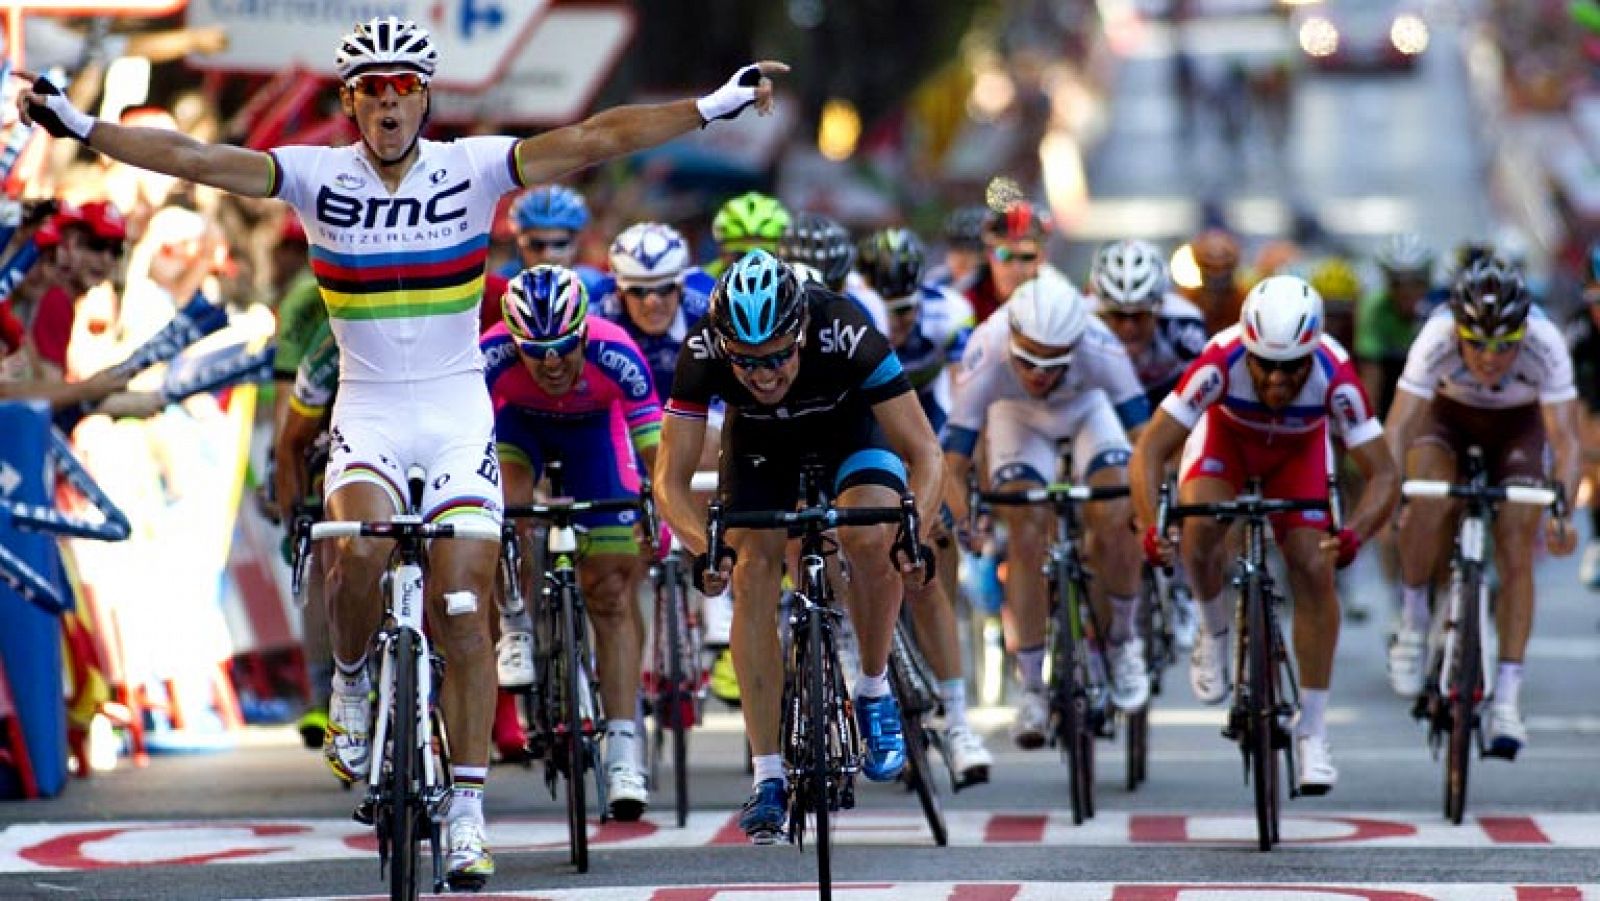 El belga Philippe Gilbert (BMC), campeón del mundo, ha ganado al esprint la undécima etapa de la Vuelta a España, disputada entre Maella y Tarragona, de 164,2 kilómetros, por delante del noruego Edvald Boasson Hagen (Sky), mientras que el italiano Vi